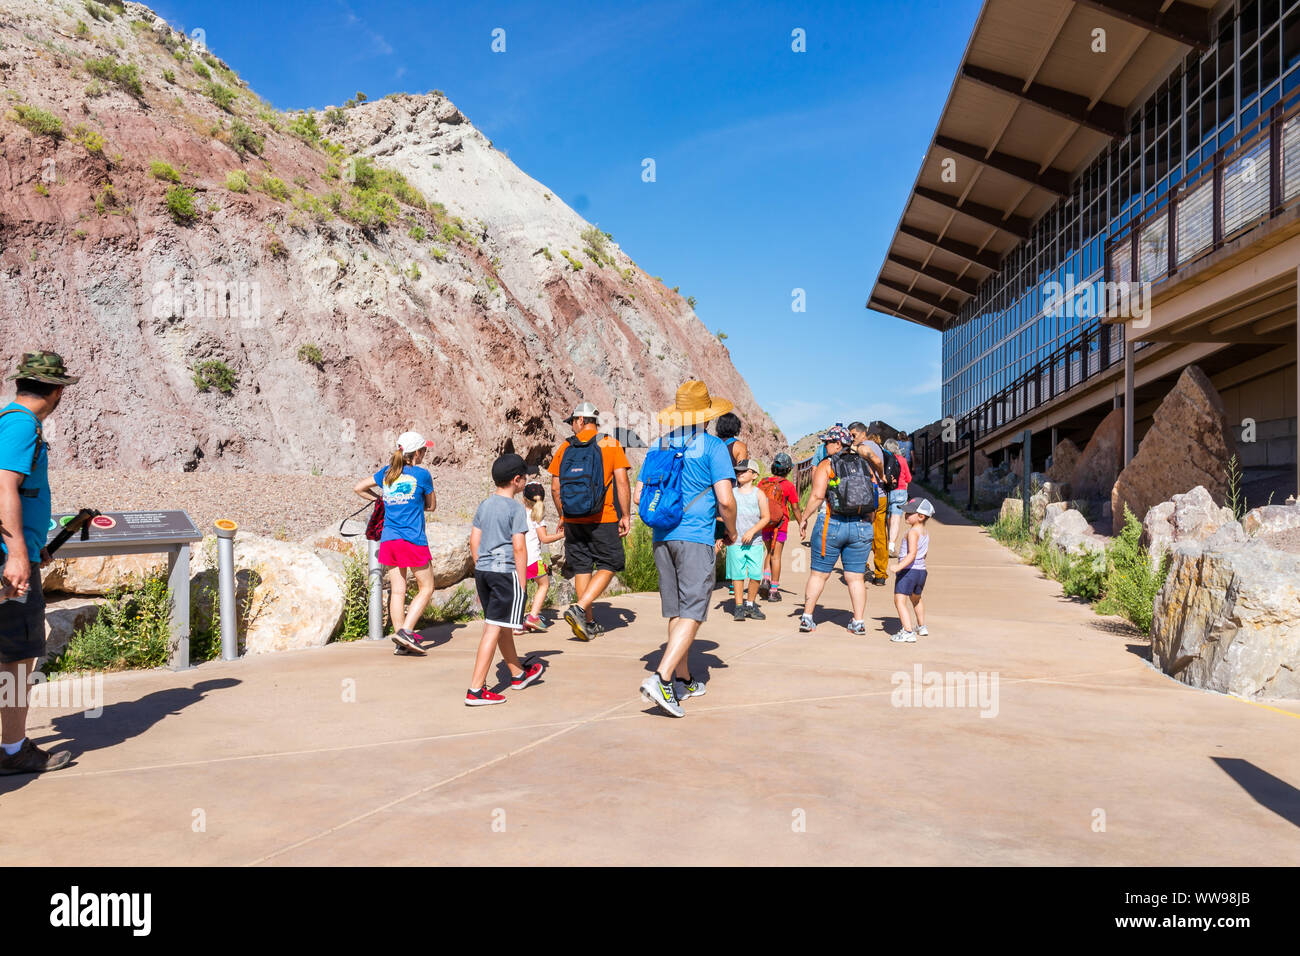 Jensen, USA - Juli 23, 2019: Außen Steinbruch Besucherzentrum Ausstellungshalle im Dinosaur National Monument Park mit Menschen Reisegruppe wandern in Utah Stockfoto